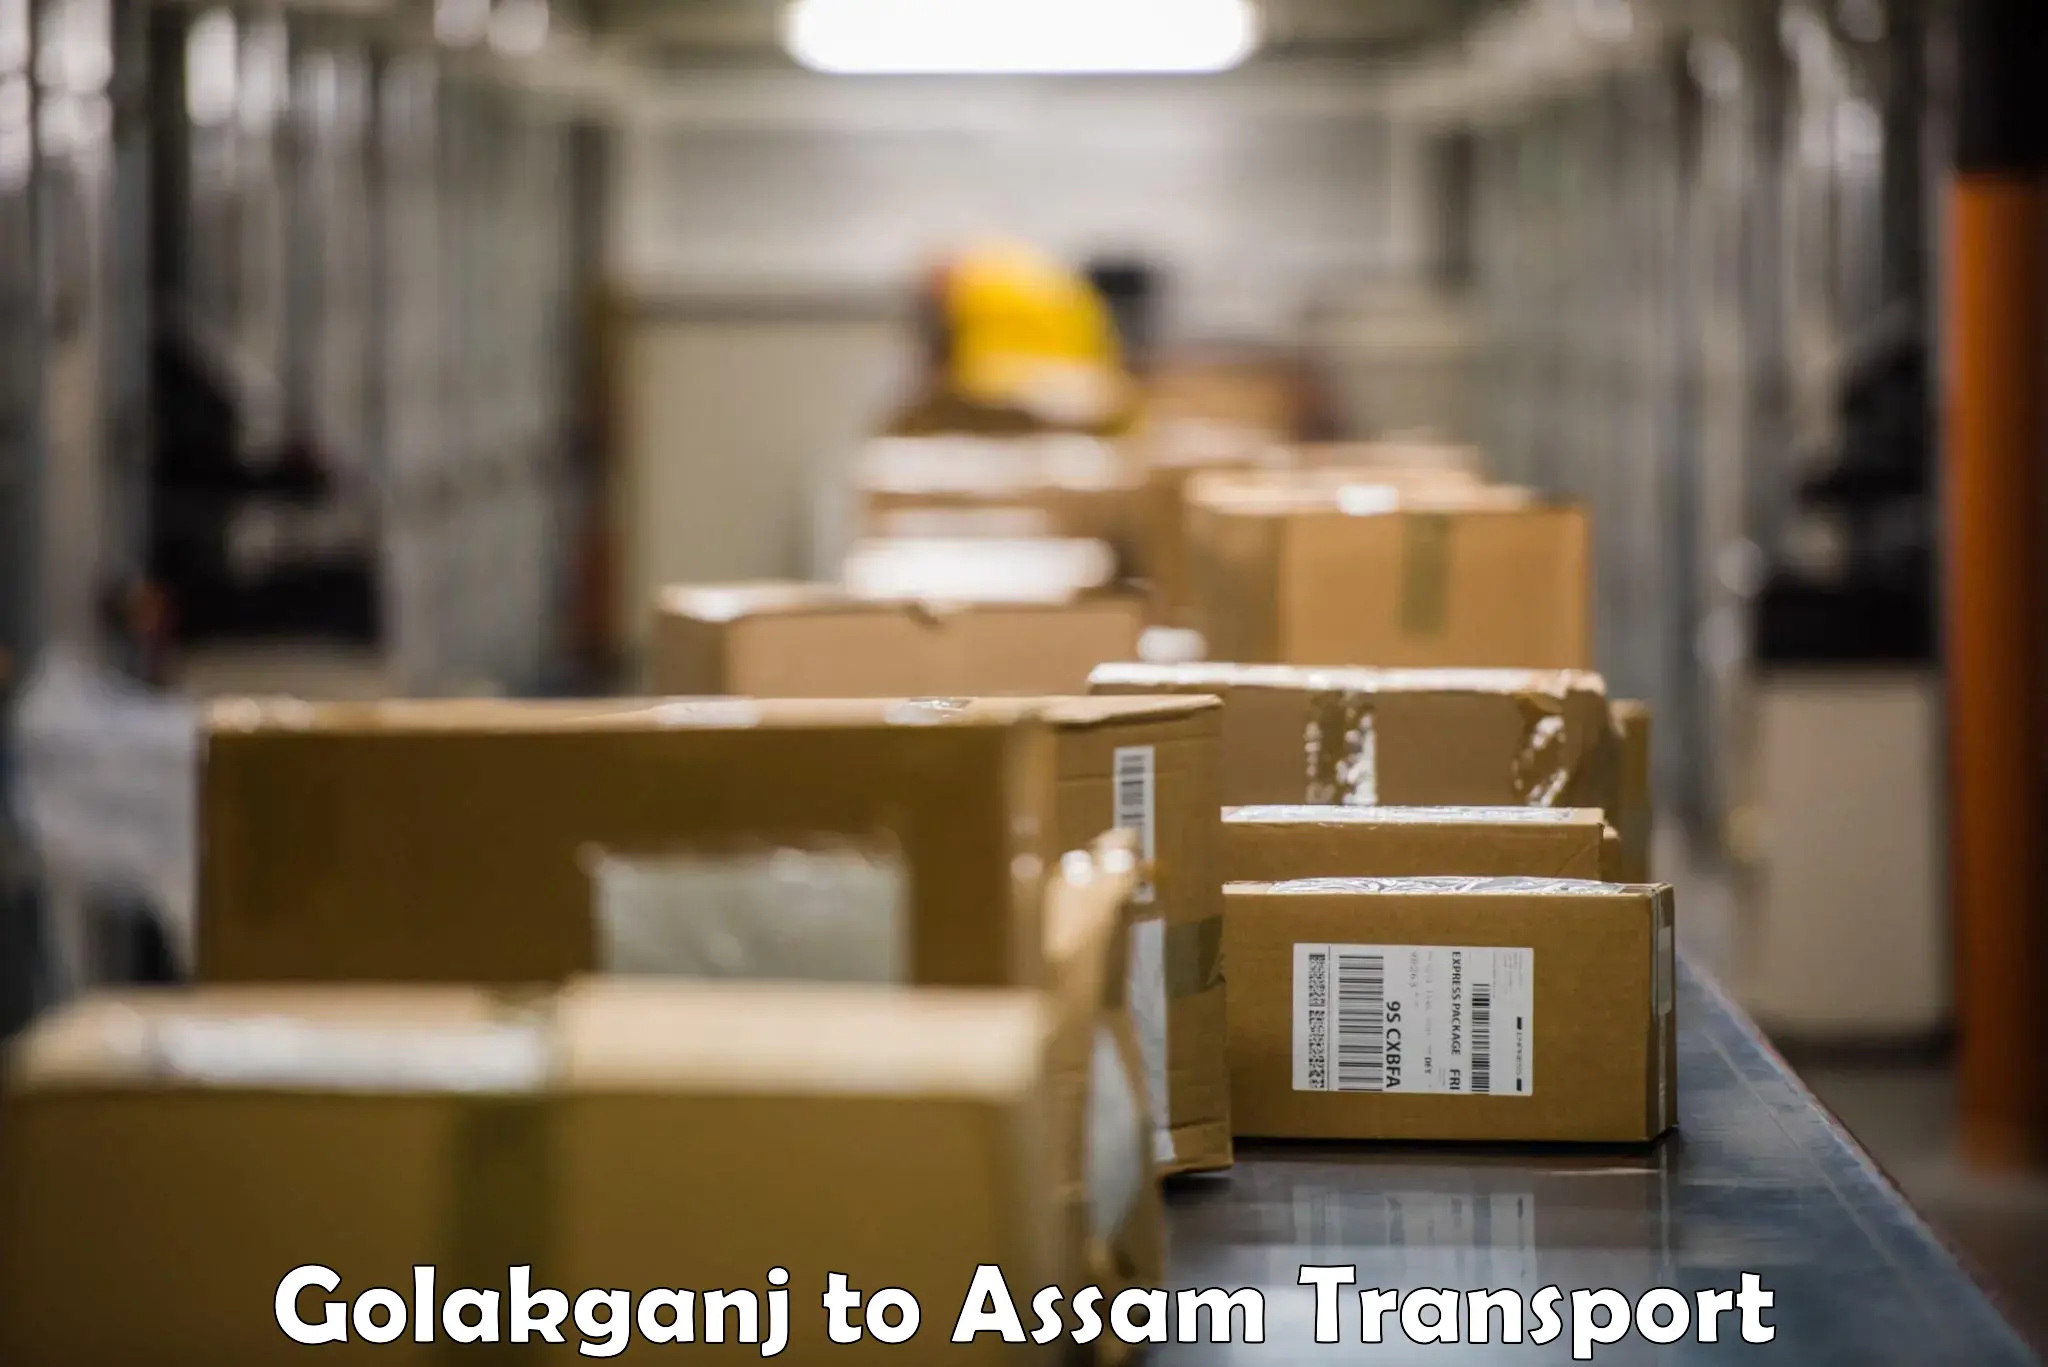 Transport in sharing Golakganj to Balapara